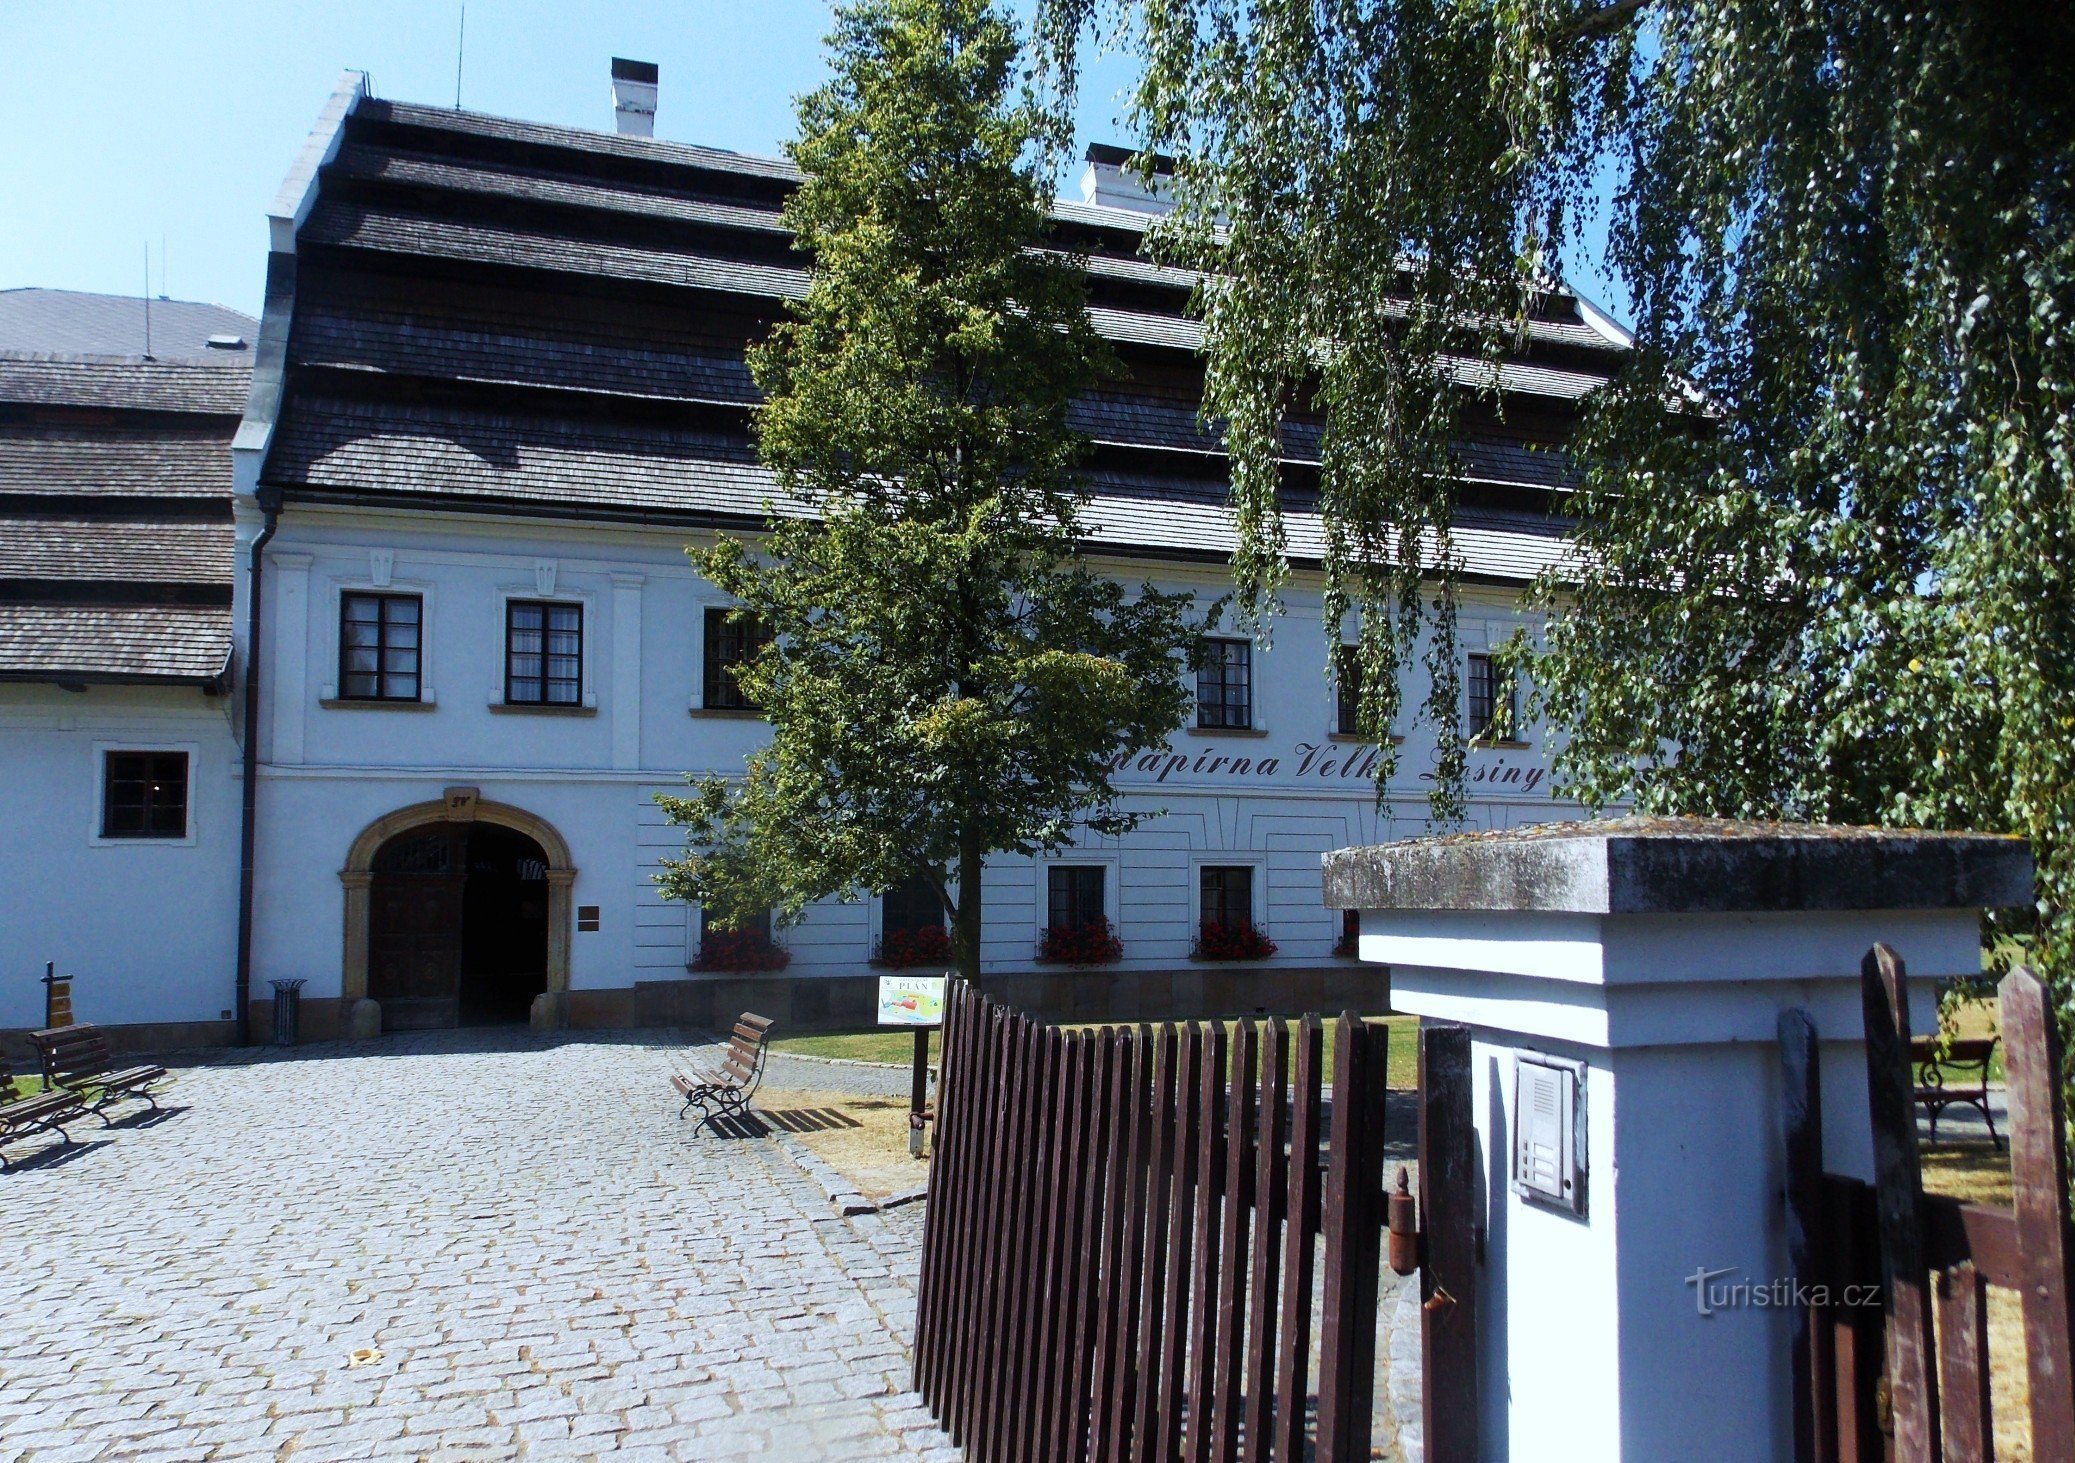 Địa điểm của Nhà máy giấy thủ công với bảo tàng ở Velké Losiny